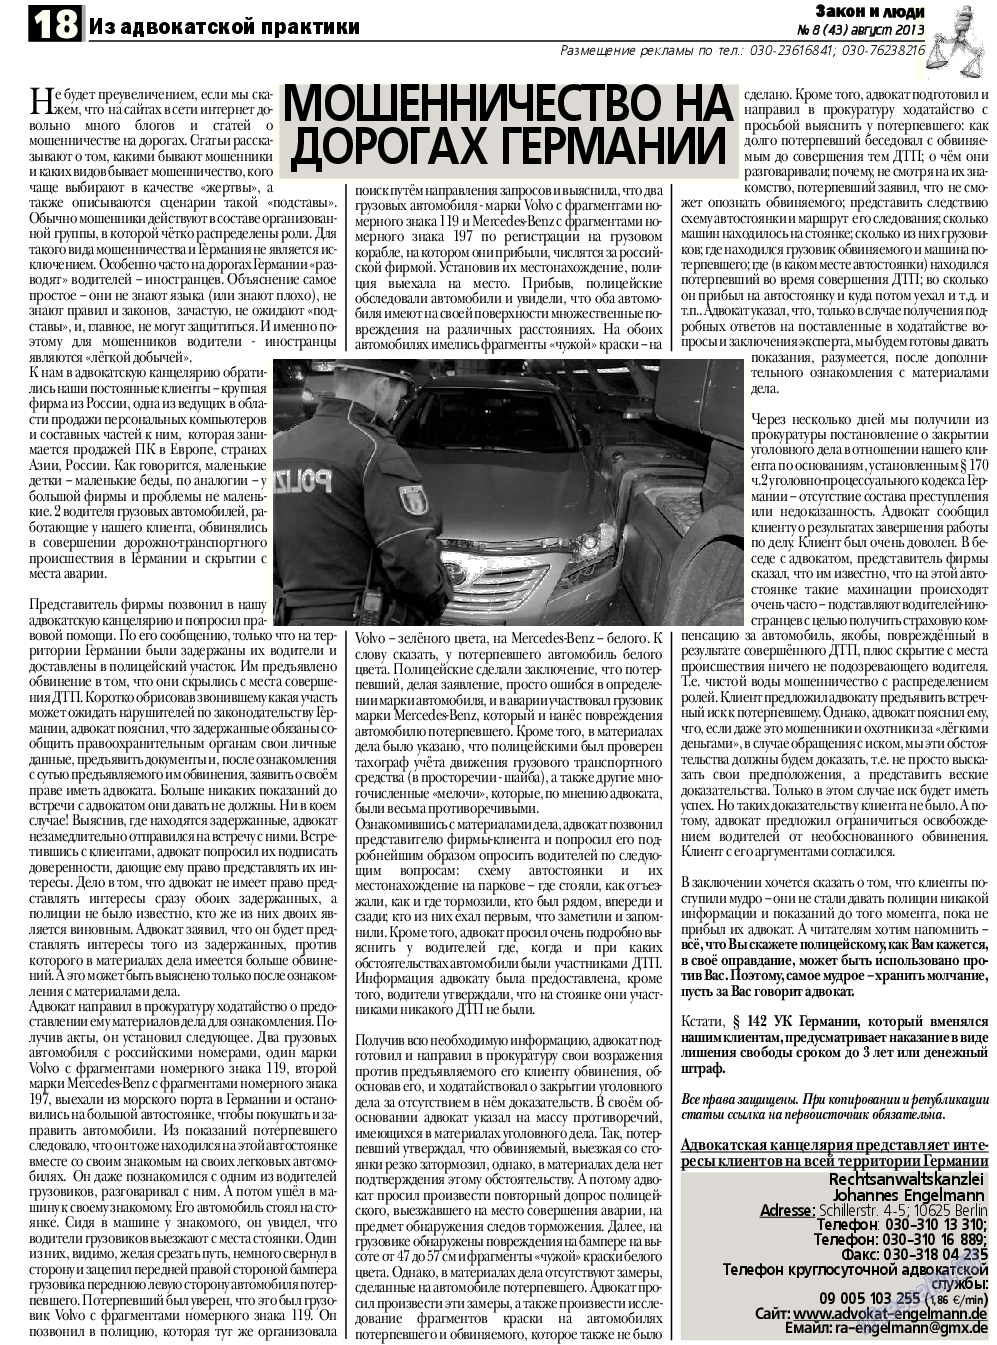 Закон и люди, газета. 2013 №8 стр.18